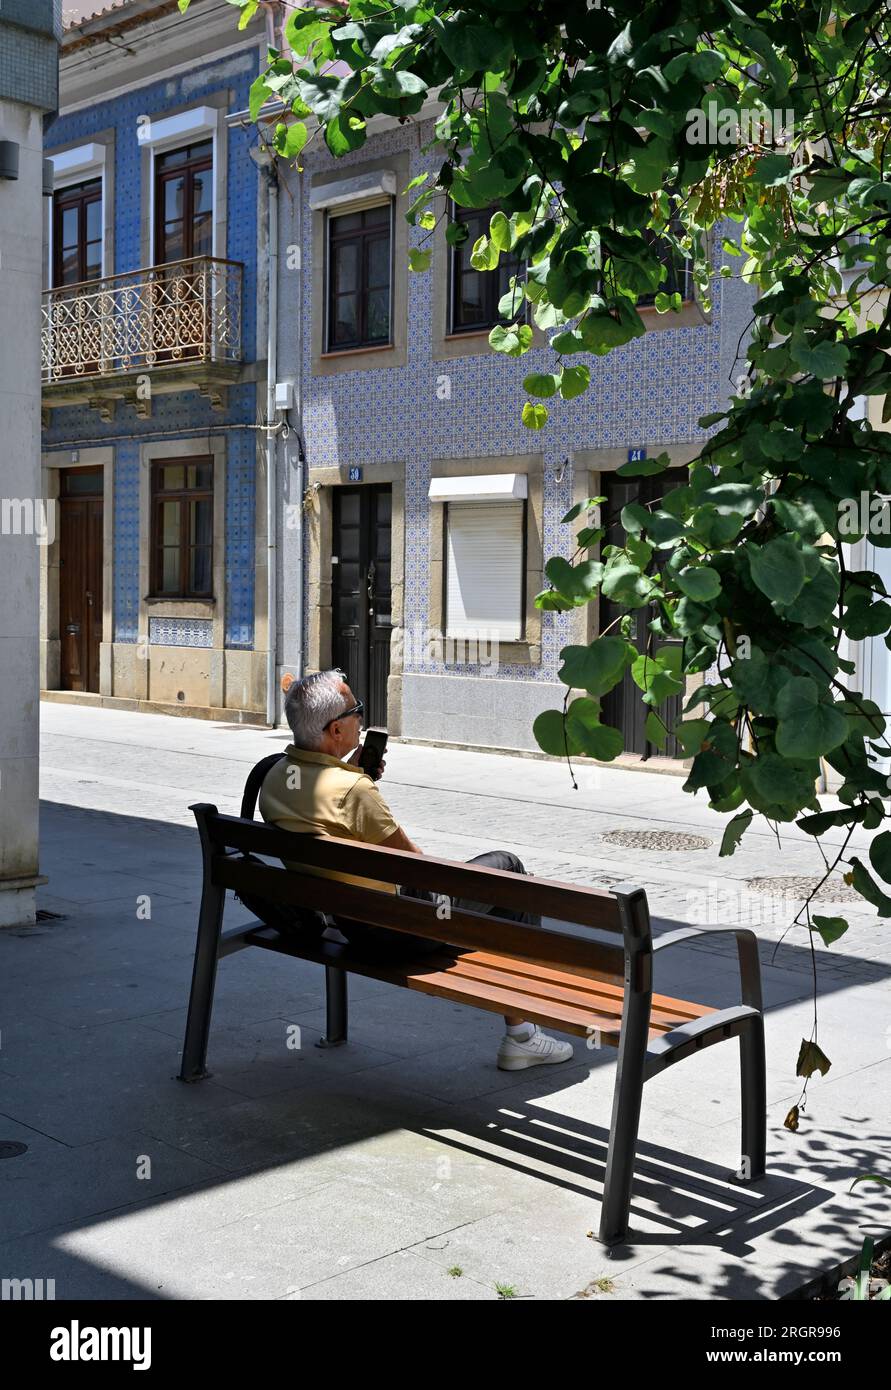 Homme plus âgé assis sur un banc se relaxant à l'ombre avec bâtiment traditionnel labouré en arrière-plan, Portugal Banque D'Images